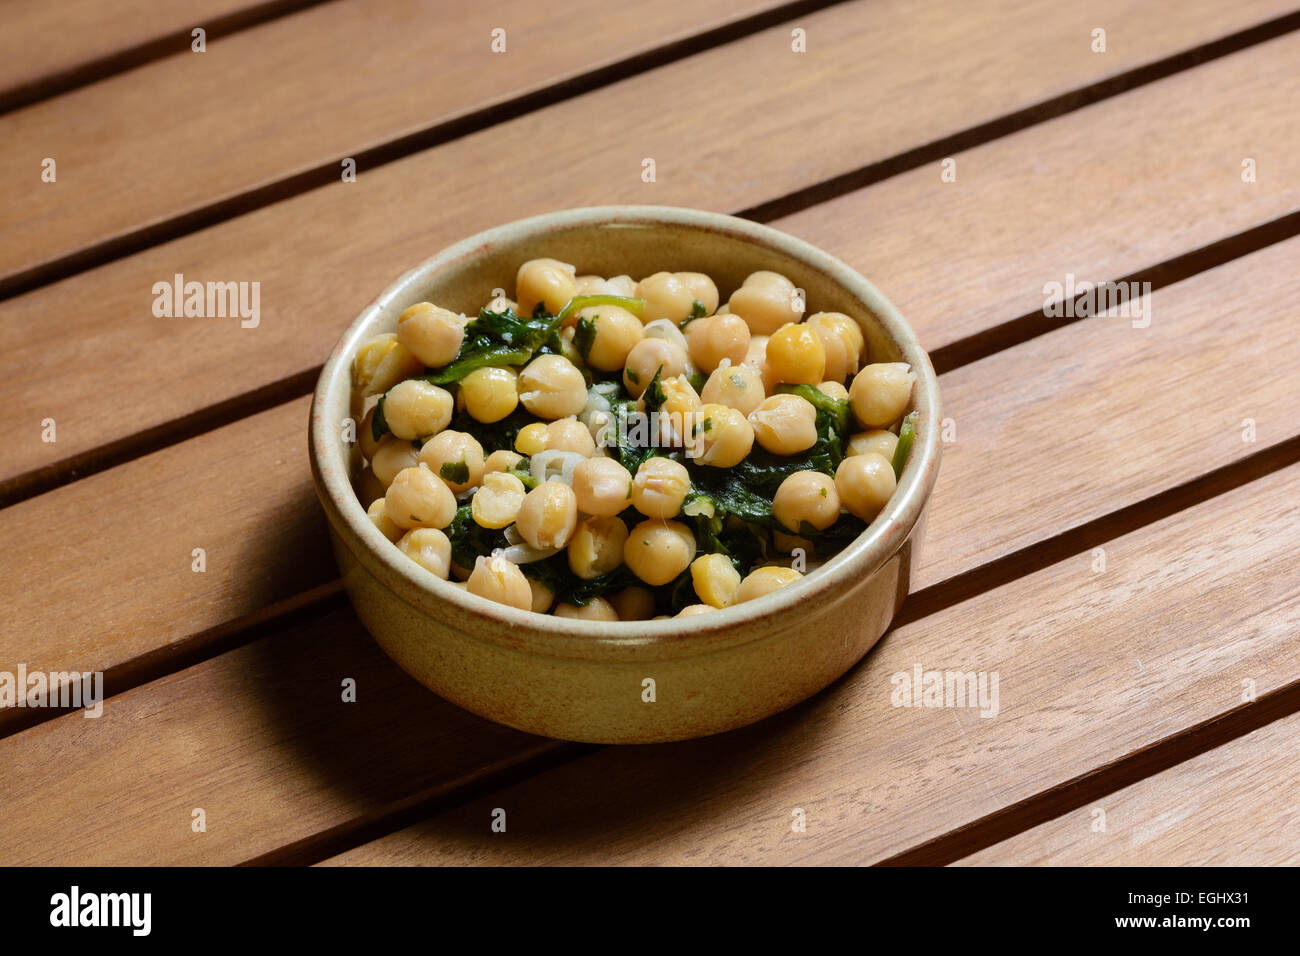 Tapas. Kichererbsen & Spinat gekocht eine würzige vorrätig, serviert in einer braunen Keramikschüssel auf einer hölzernen Tischplatte Stockfoto